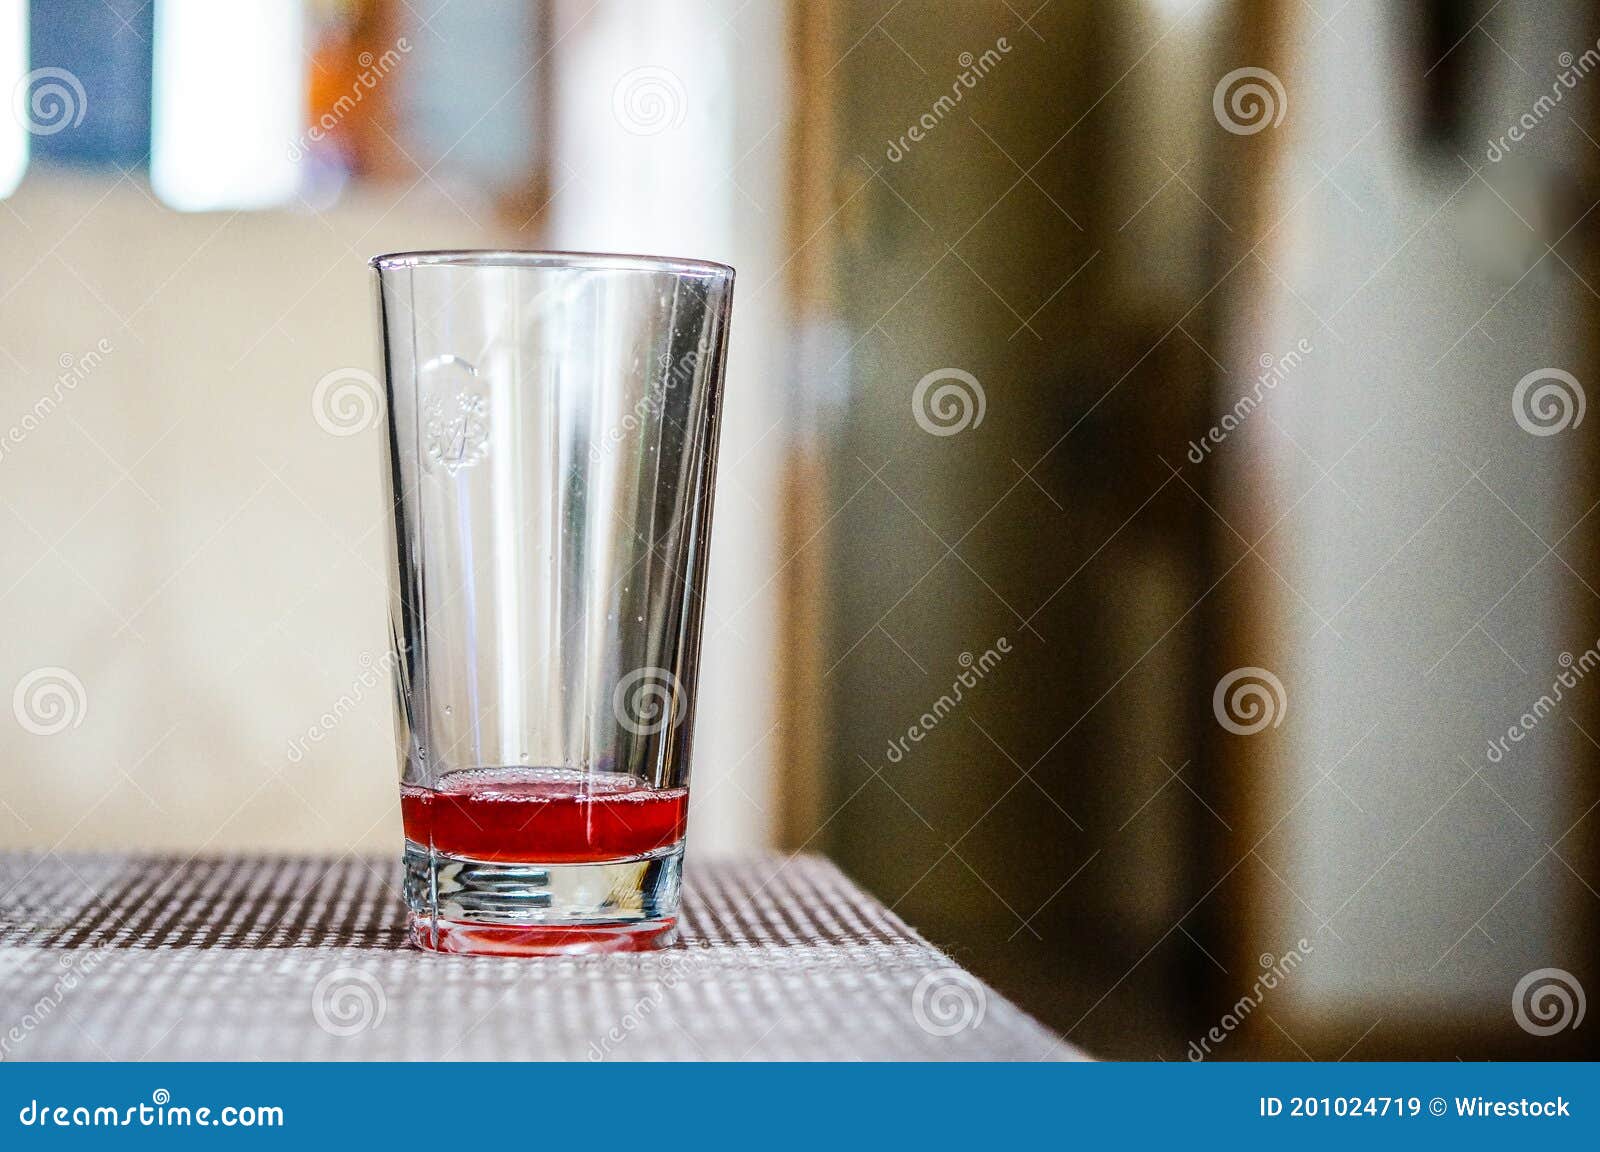 Неси пустой стакан. Пустой стакан на столе. Почти пустой стакан. Пустой стакан на столе примета. Пустой стакан фото.